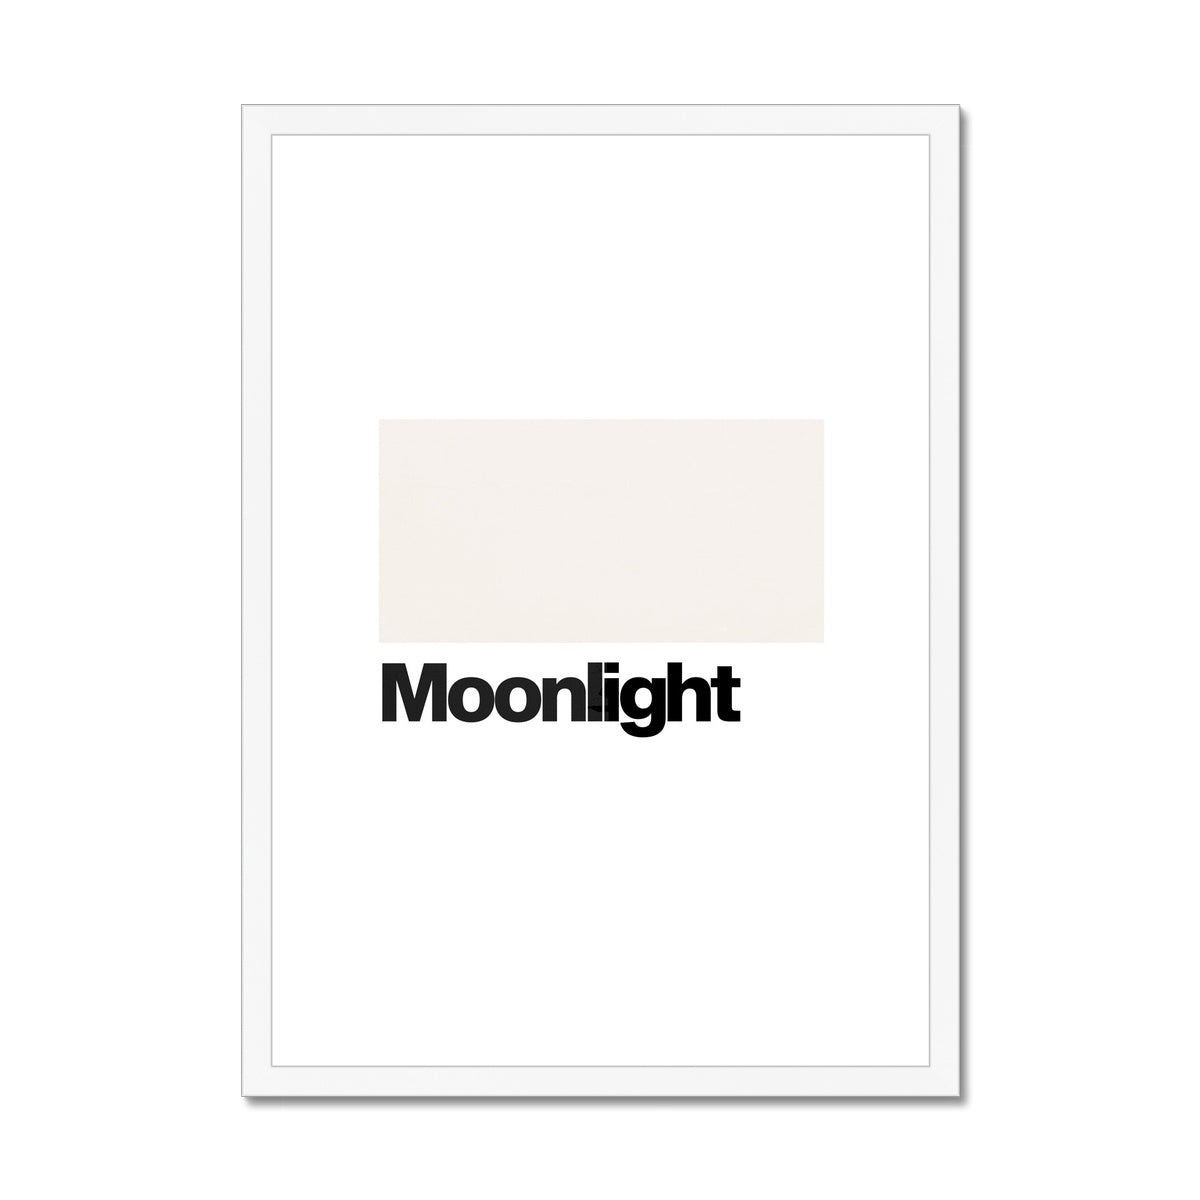 Moonlight Framed & Mounted Print